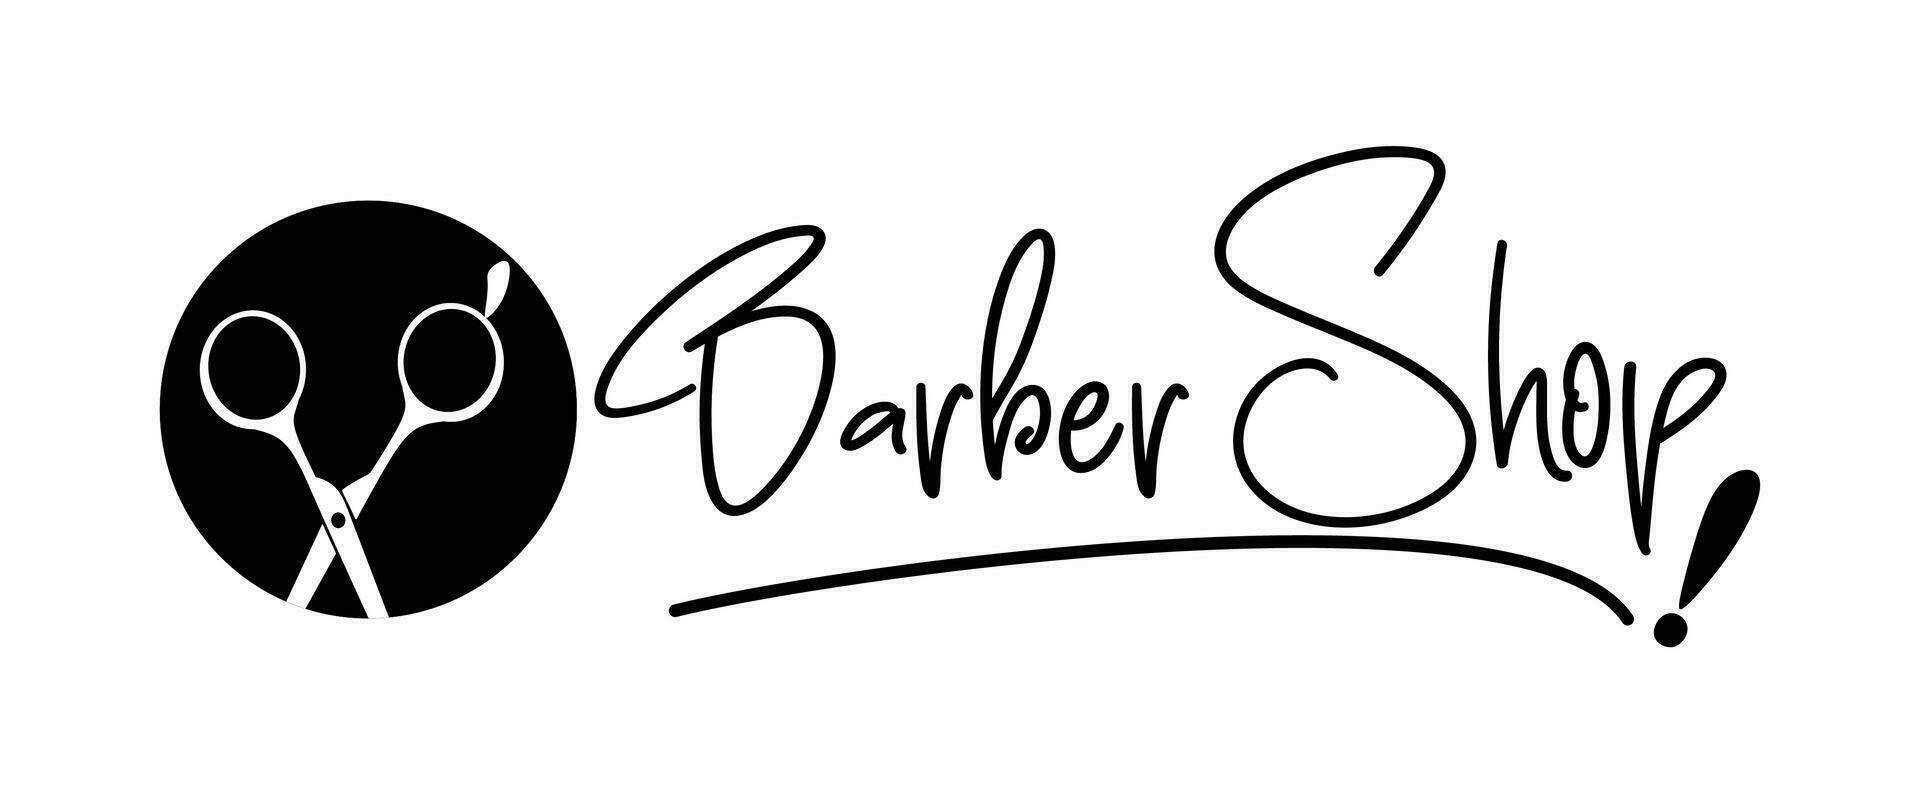 vector vector Barbero tienda negocio tarjeta y de los hombres salón o Barbero tienda logo negro y blanco